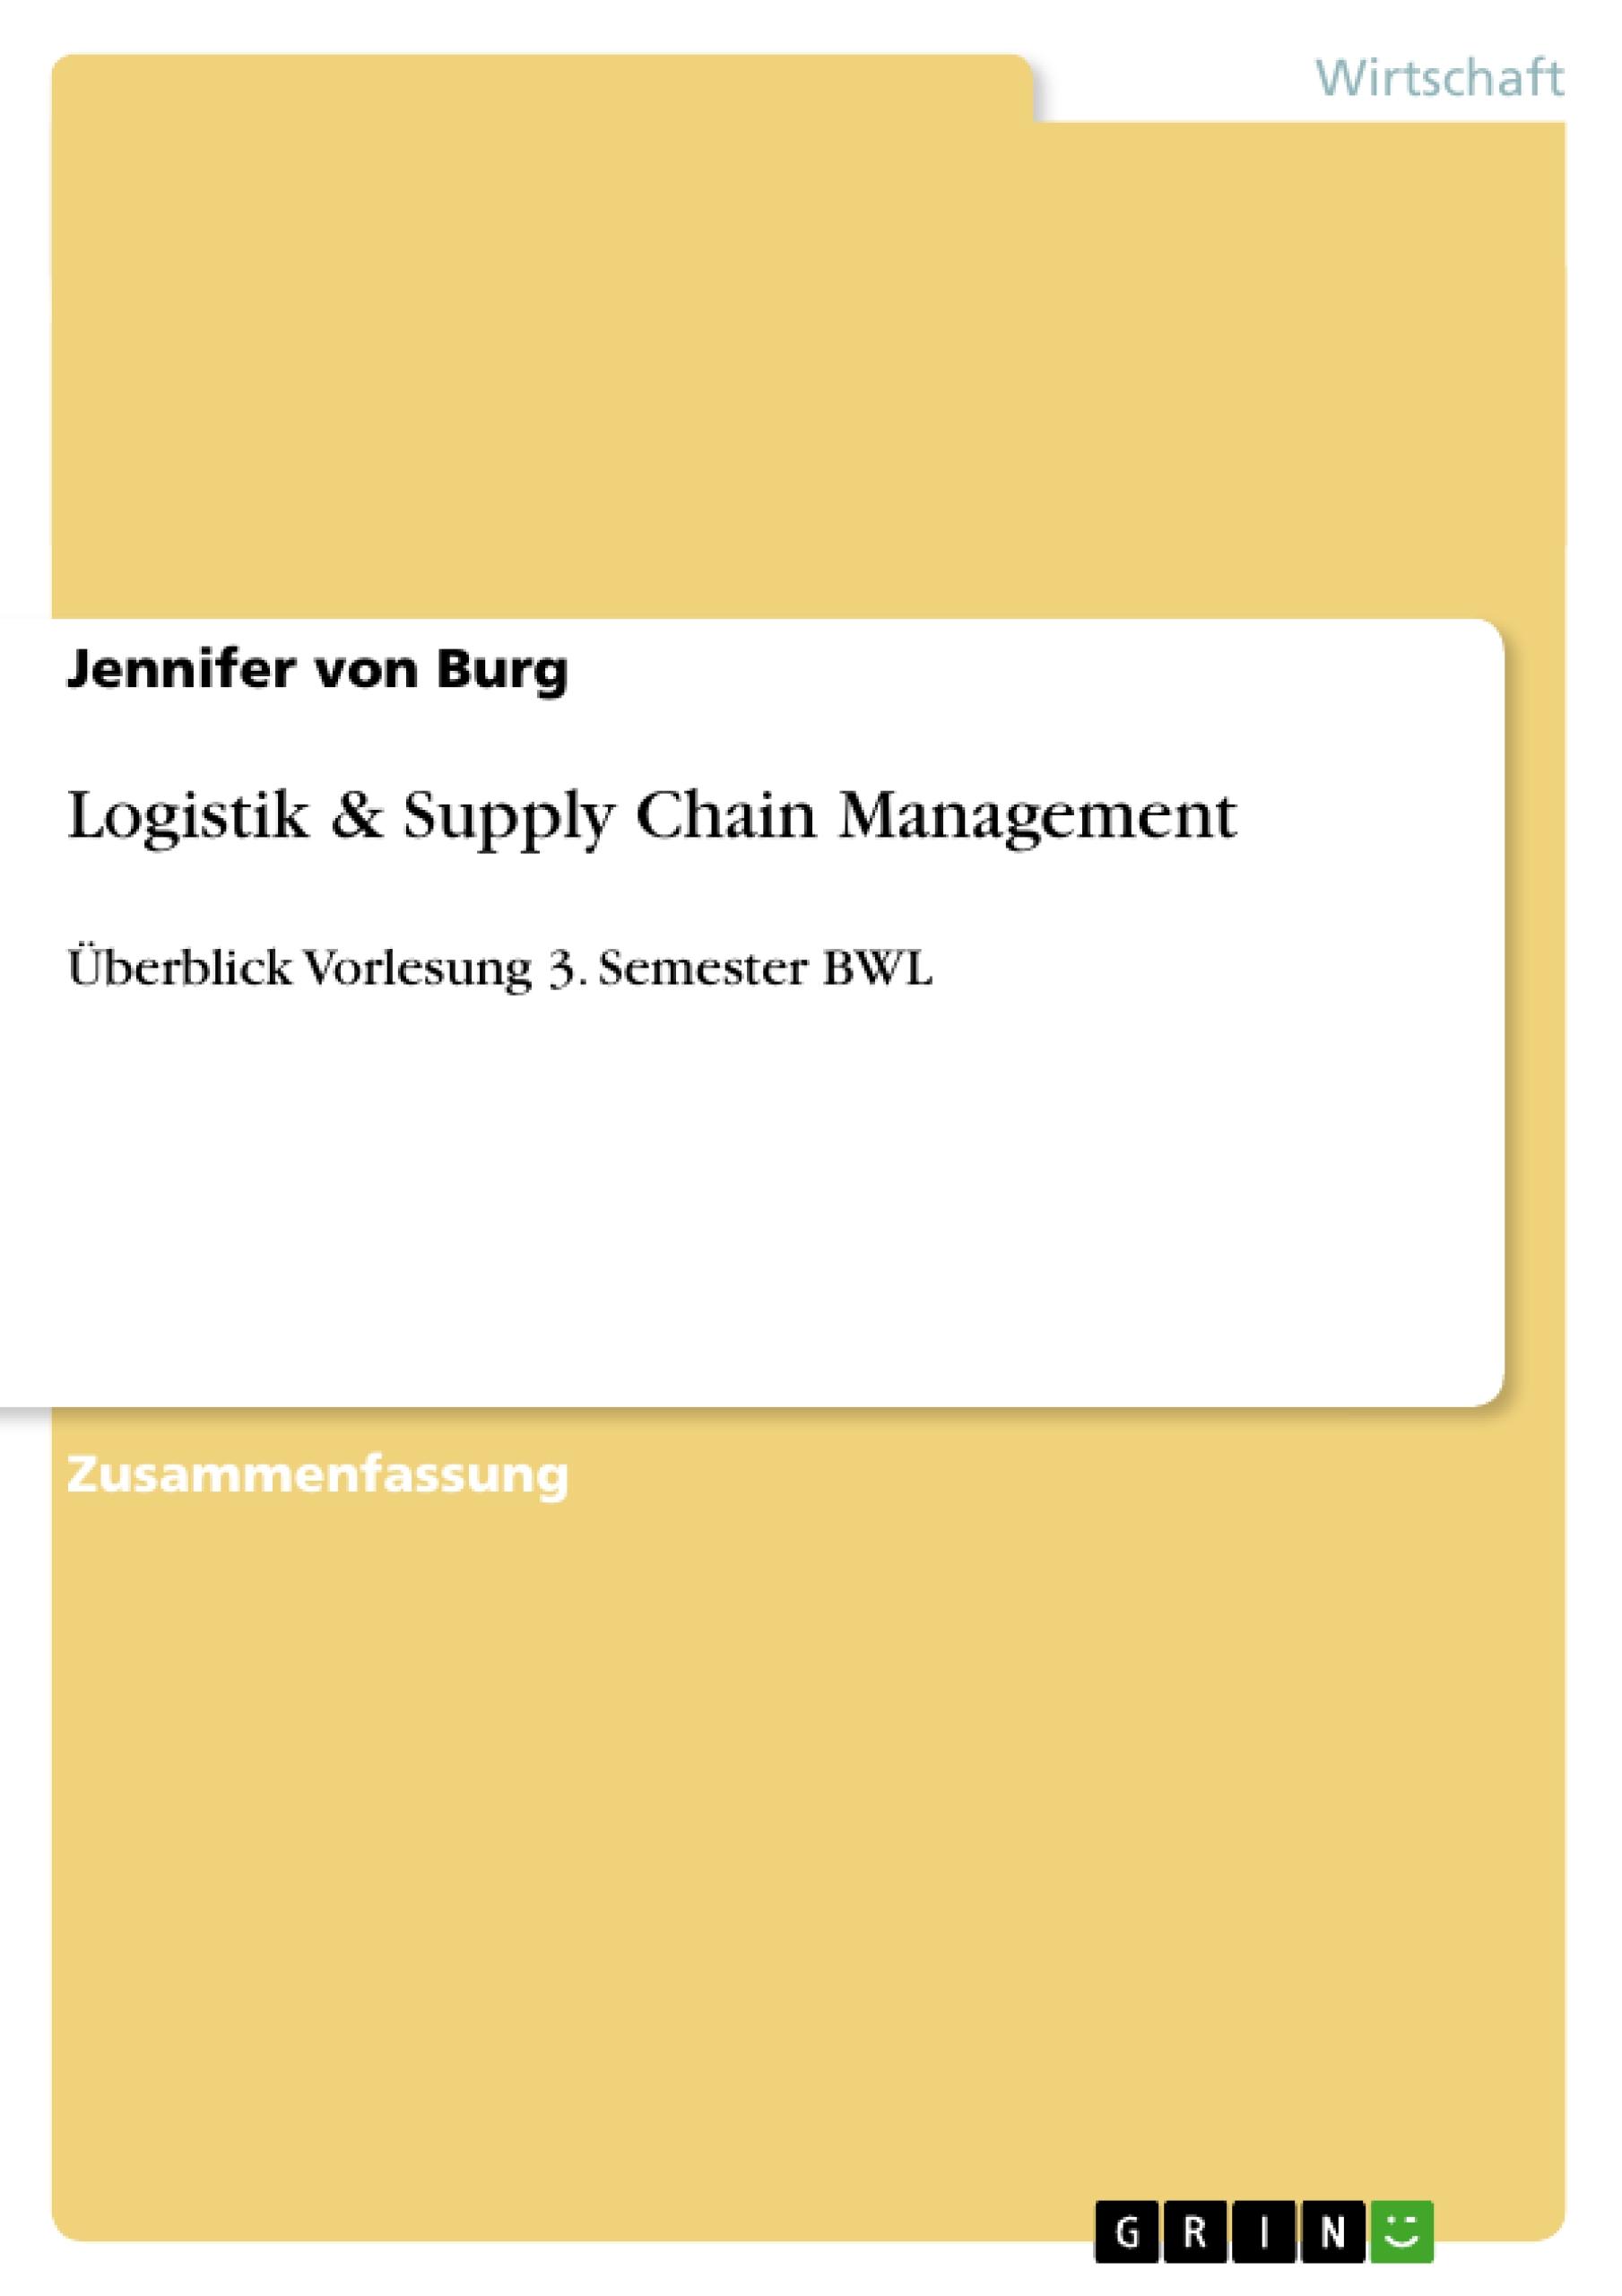 Logistik & Supply Chain Management - Burg, Jennifer von